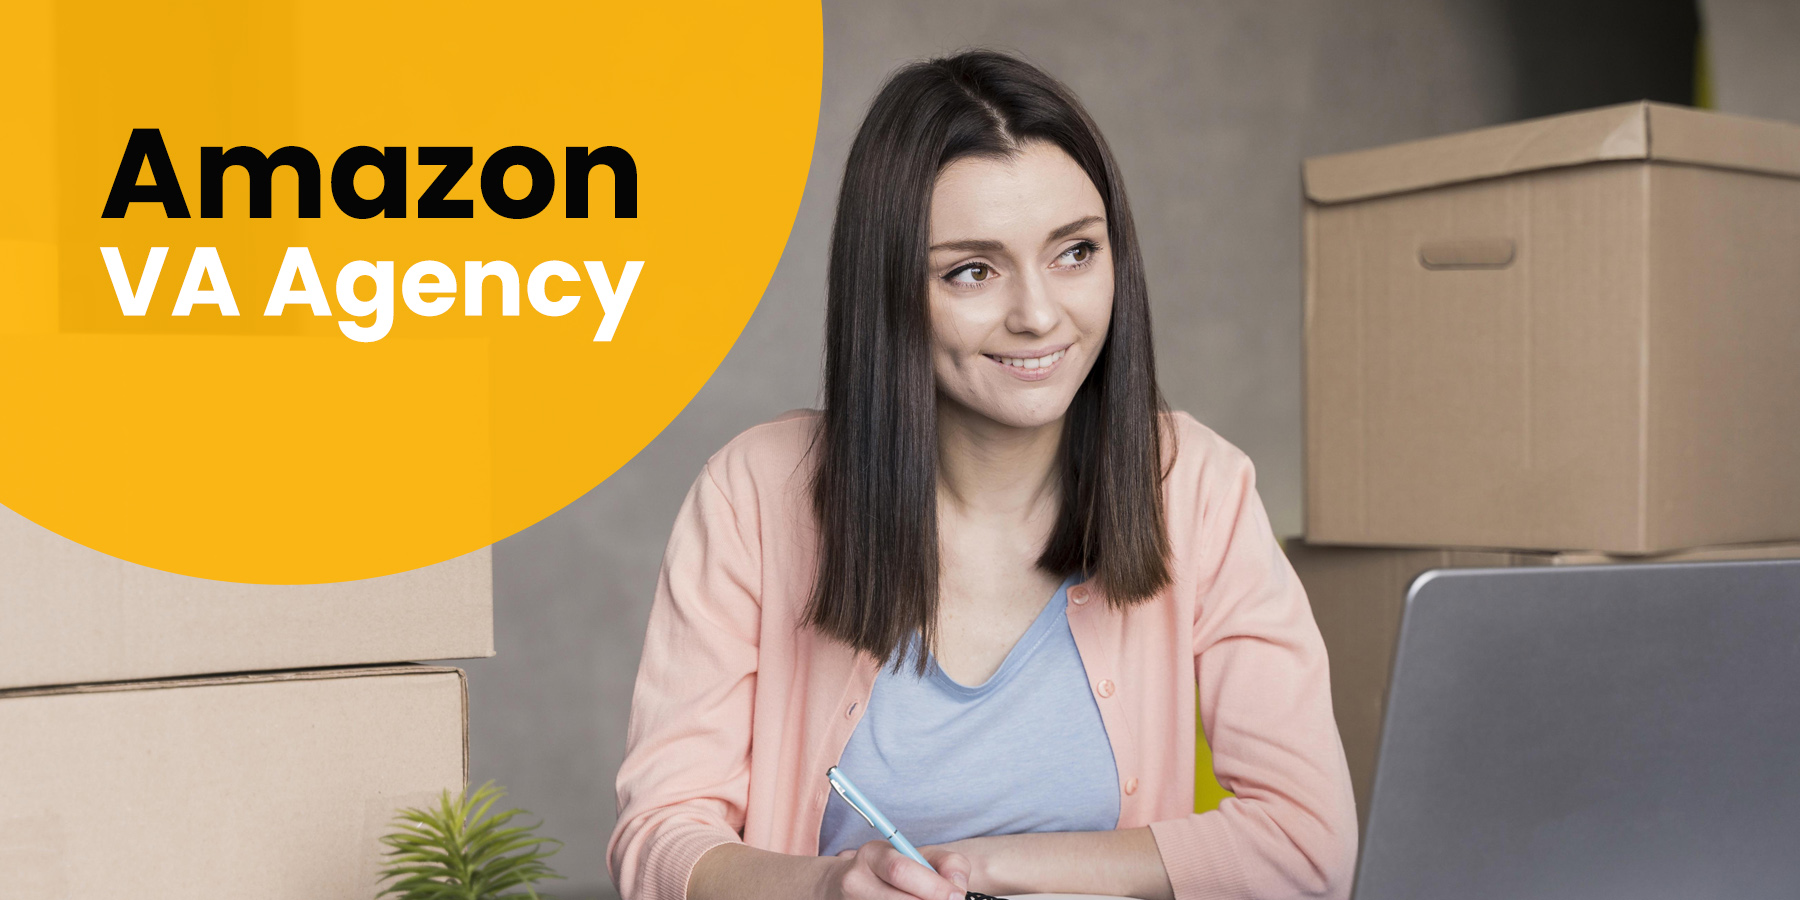 Amazon Va Agency